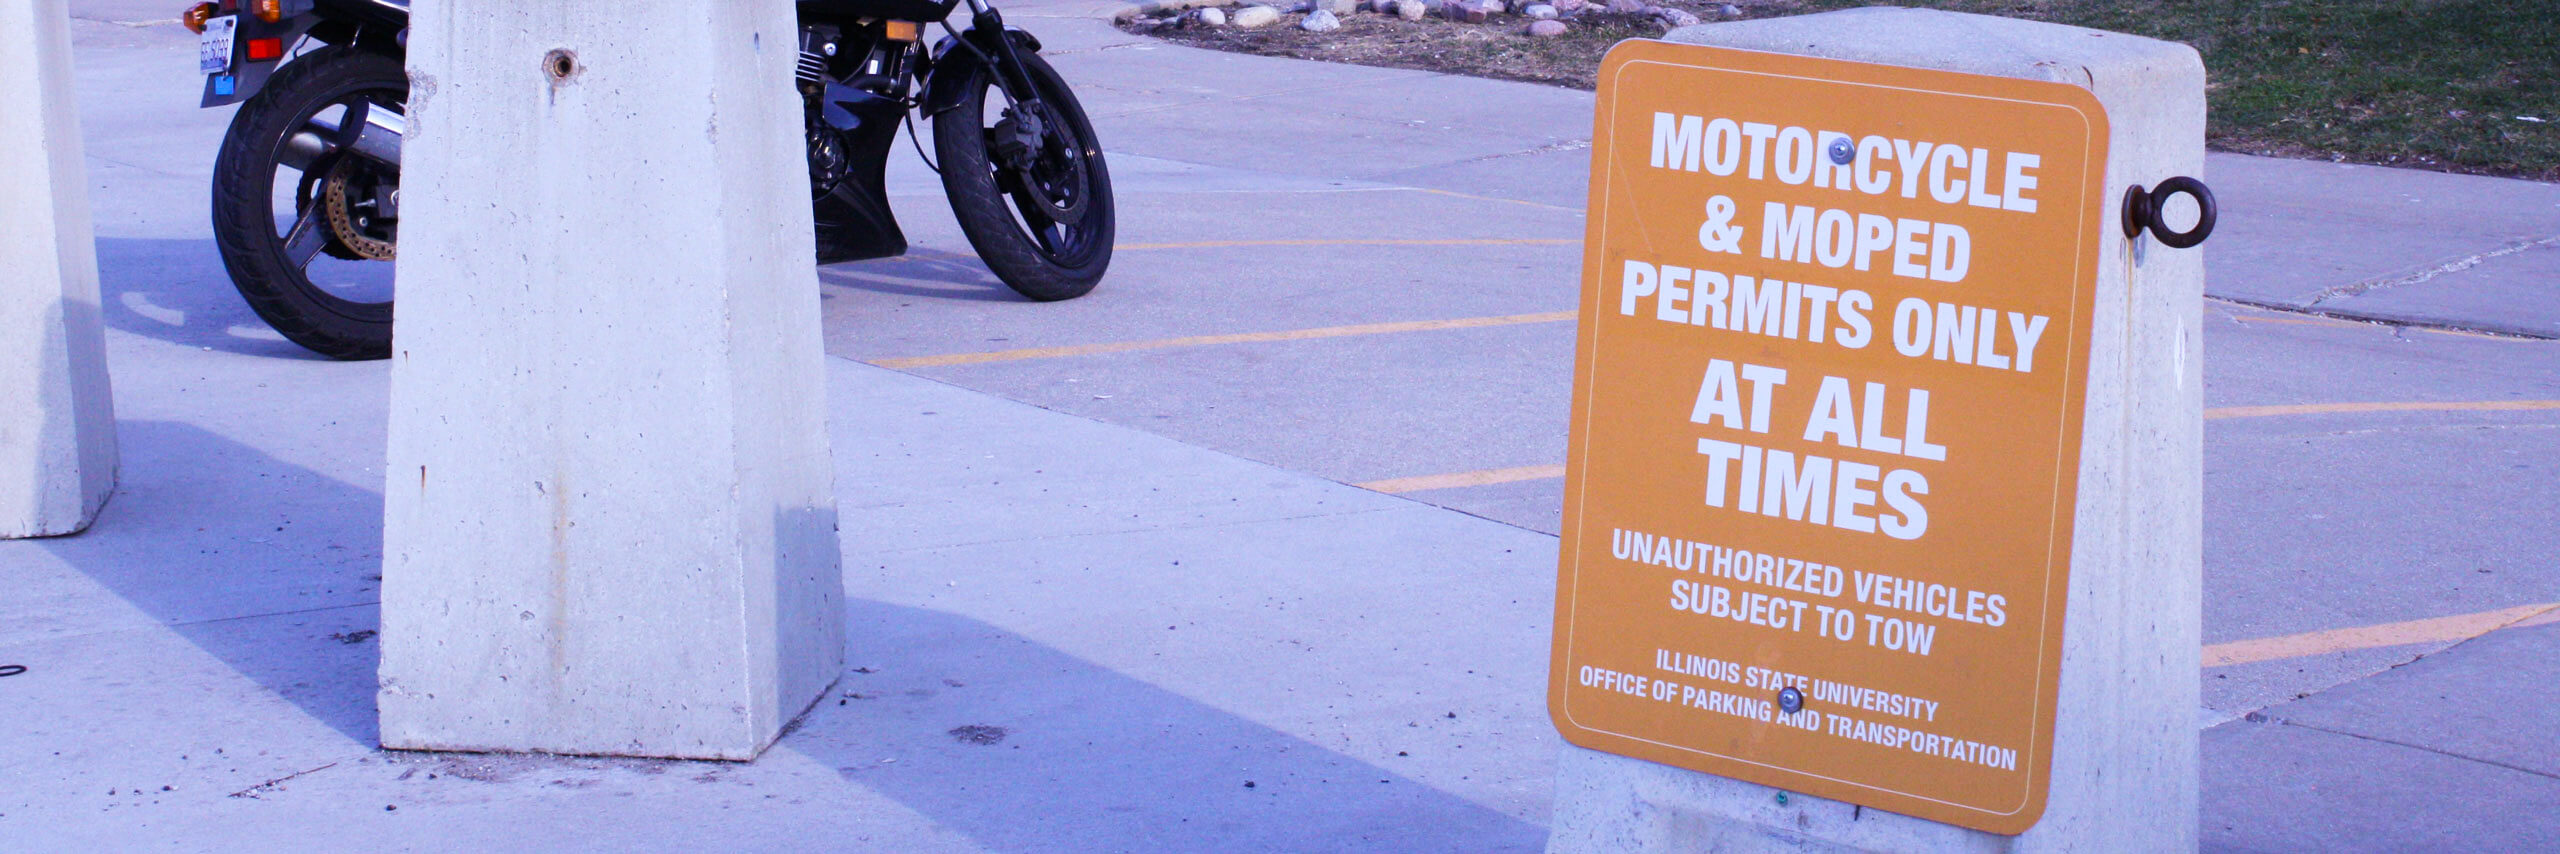 摩托车的照片/助力车停车标志。